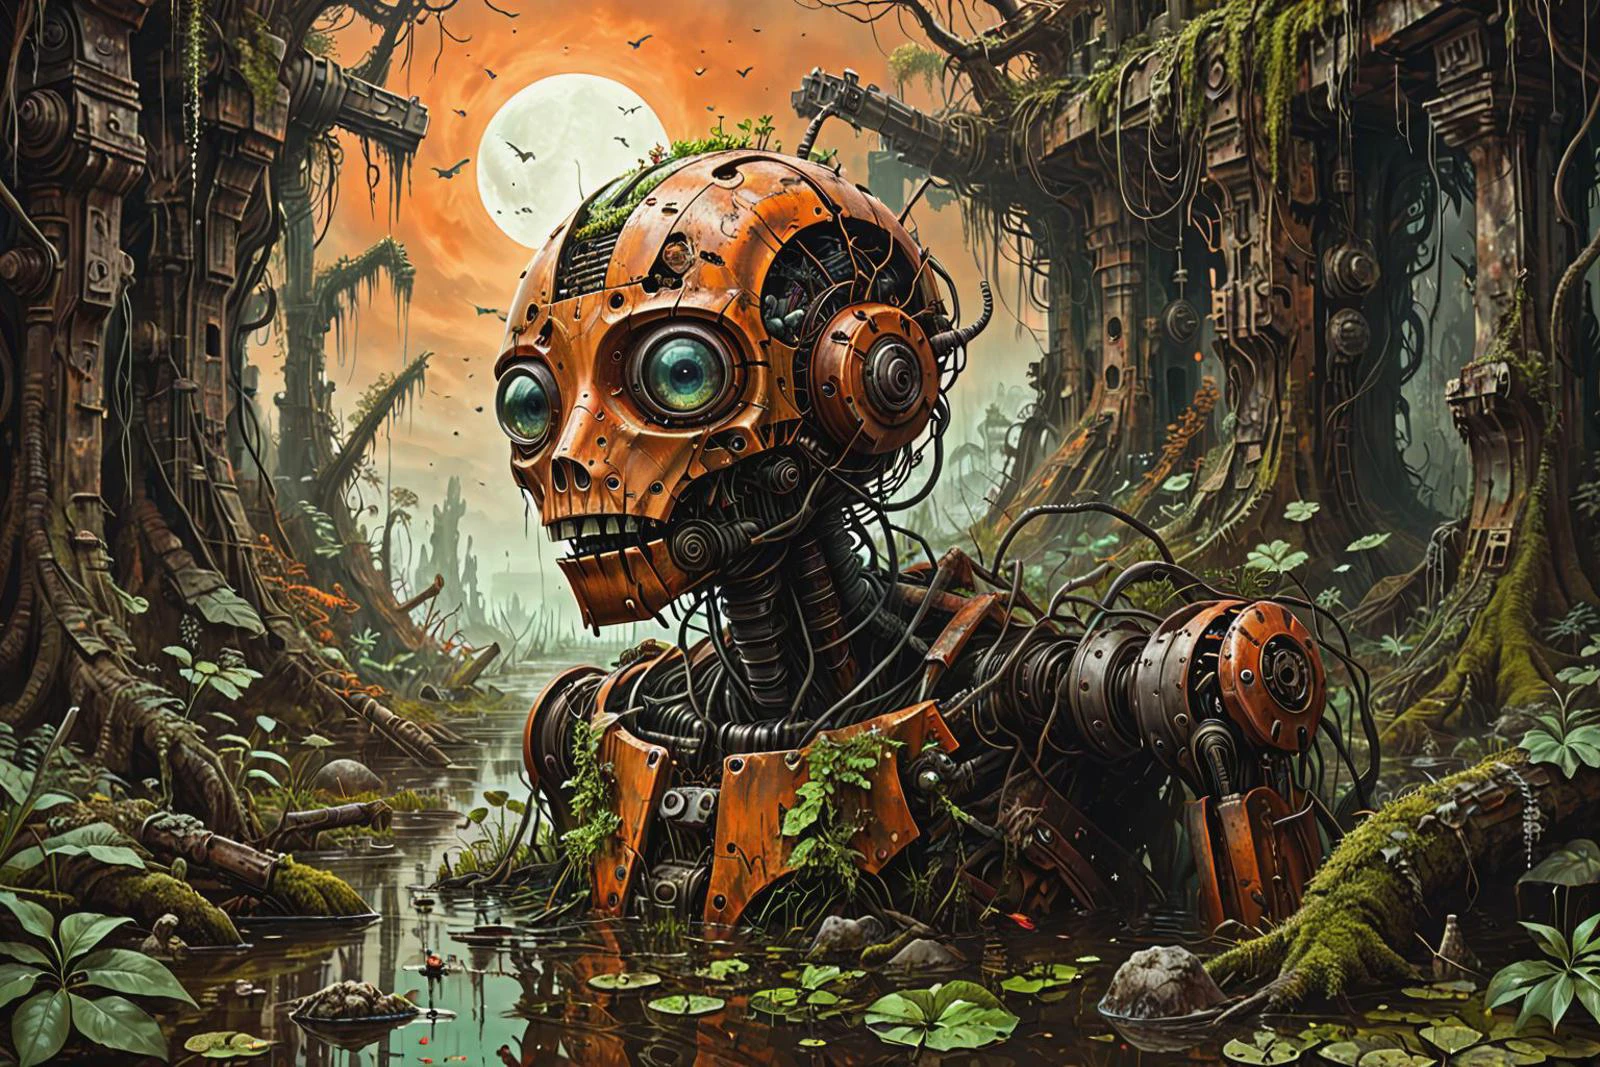 une illustration scifi vivante d&#39;un robot de guerre fantastique surréaliste rouillé et envahi par la végétation noyé dans un marais, armes détruites, machinerie, mousse, feuilles, des arbres, jungle, ciel orange foncé,
 illusion gauche